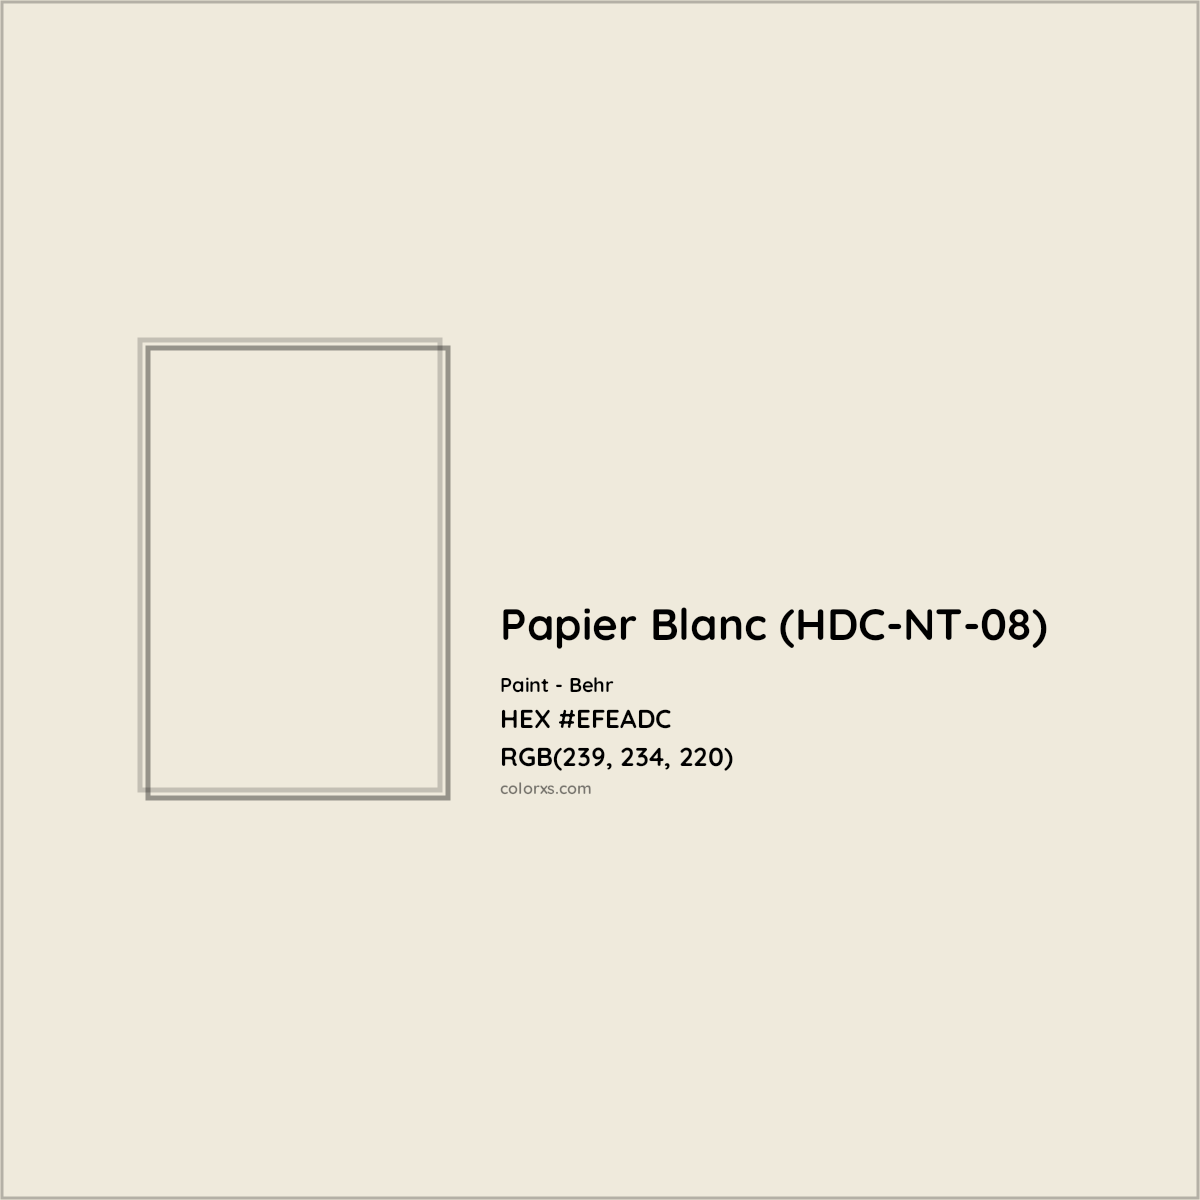 HEX #EFEADC Papier Blanc (HDC-NT-08) Paint Behr - Color Code